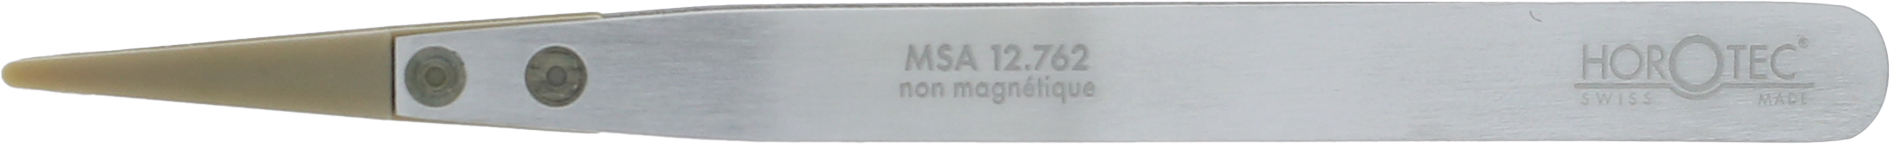 MSA12.762